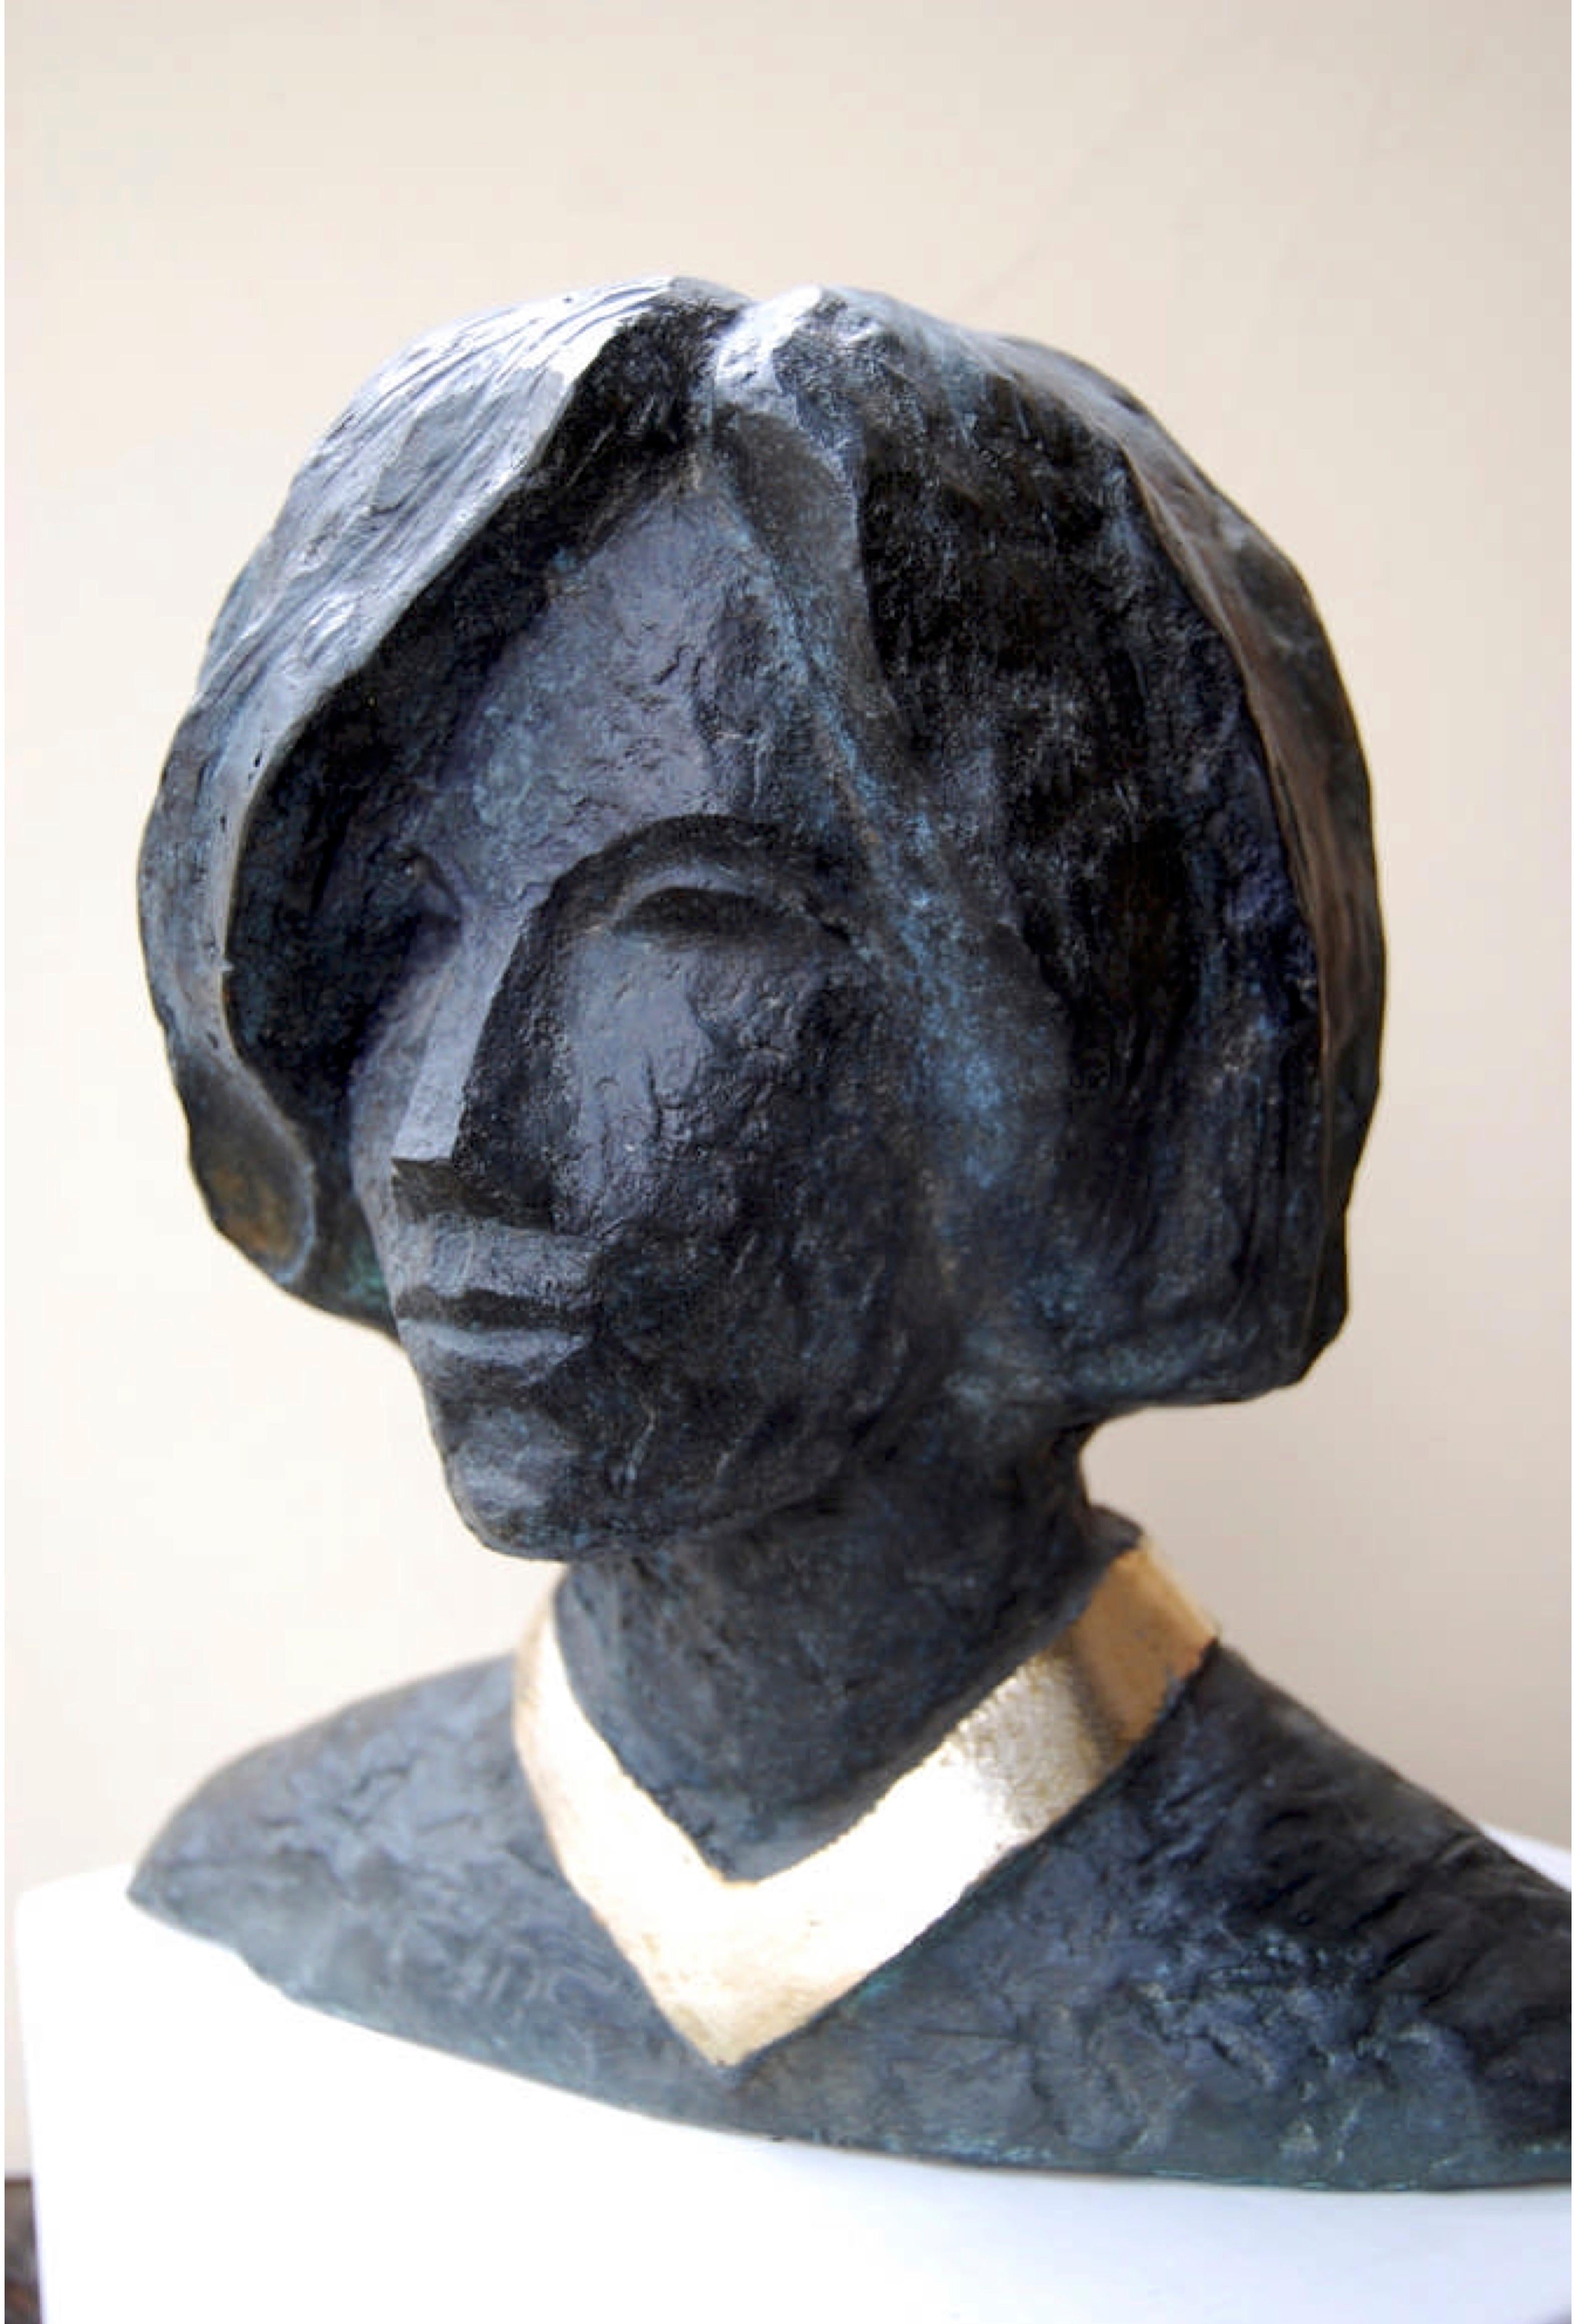 "Samantha" Bronze-Skulptur 14" x 13" x 9" Zoll von Sarkis Tossonian

* Aufgrund der Politik des Kulturministeriums und der COVID-Situation kann die Bearbeitungszeit (Papierkram) bis zu 1-3 Monate dauern.  

Sarkis Tossoonian wurde 1953 in Alexandria